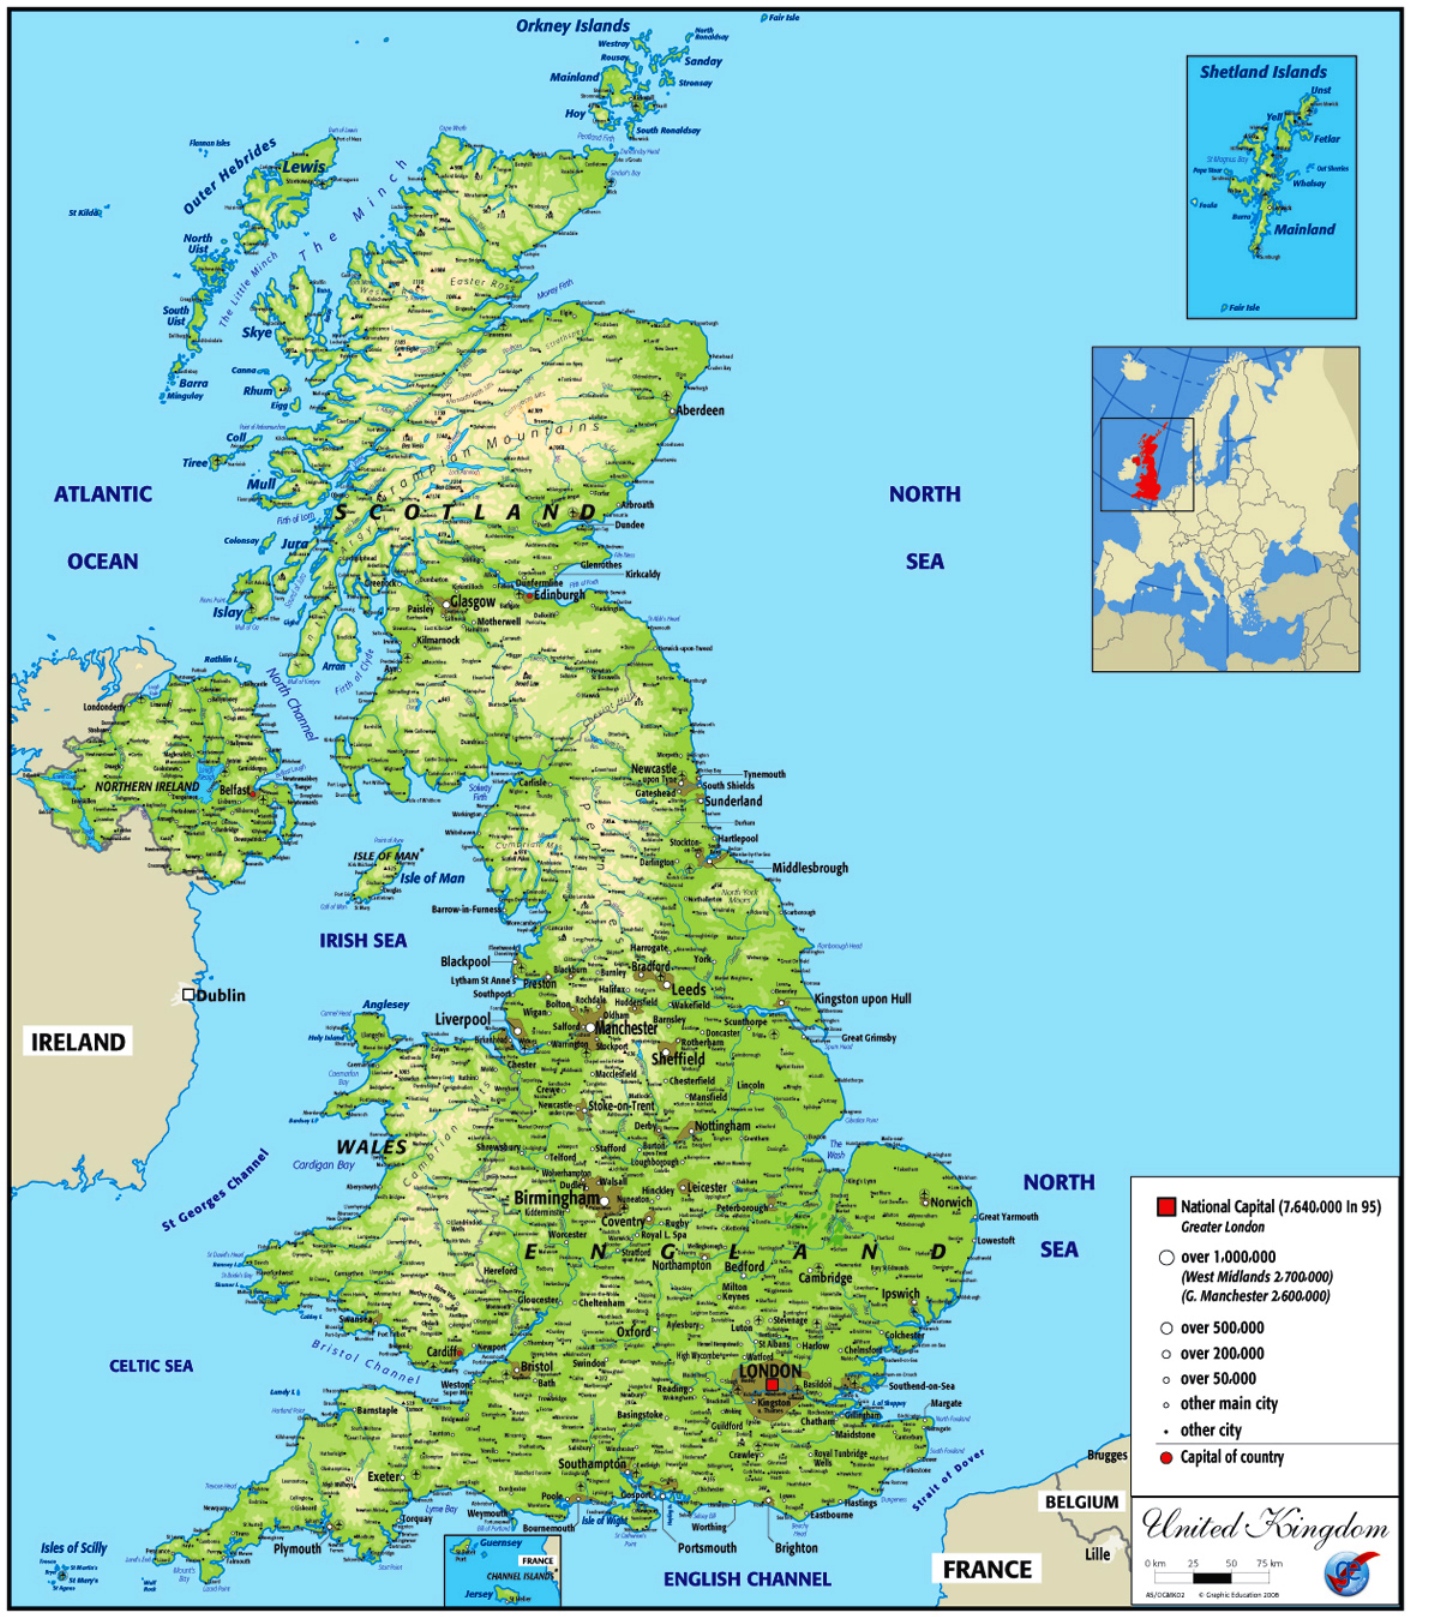 Mappa geografica del Regno Unito: geografia, clima, flora, fauna